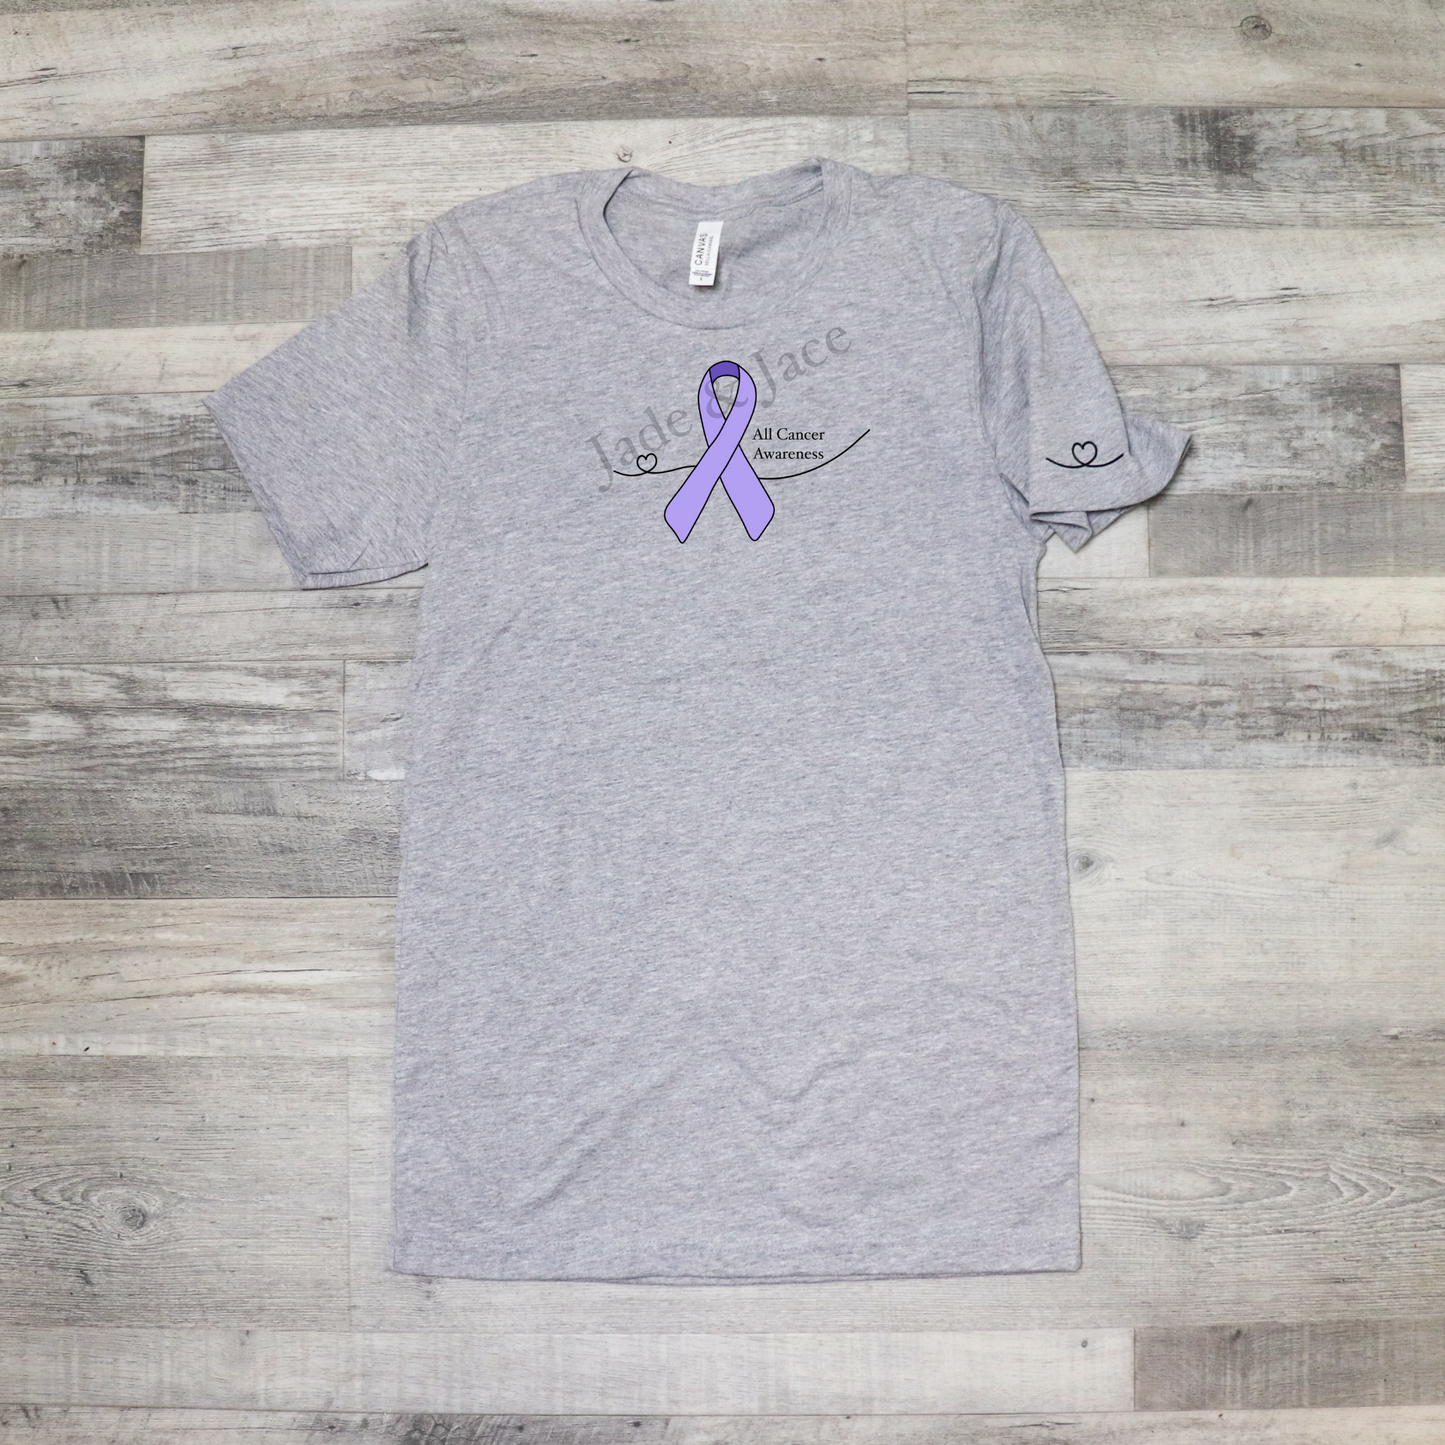 All Cancer Awareness T-Shirt